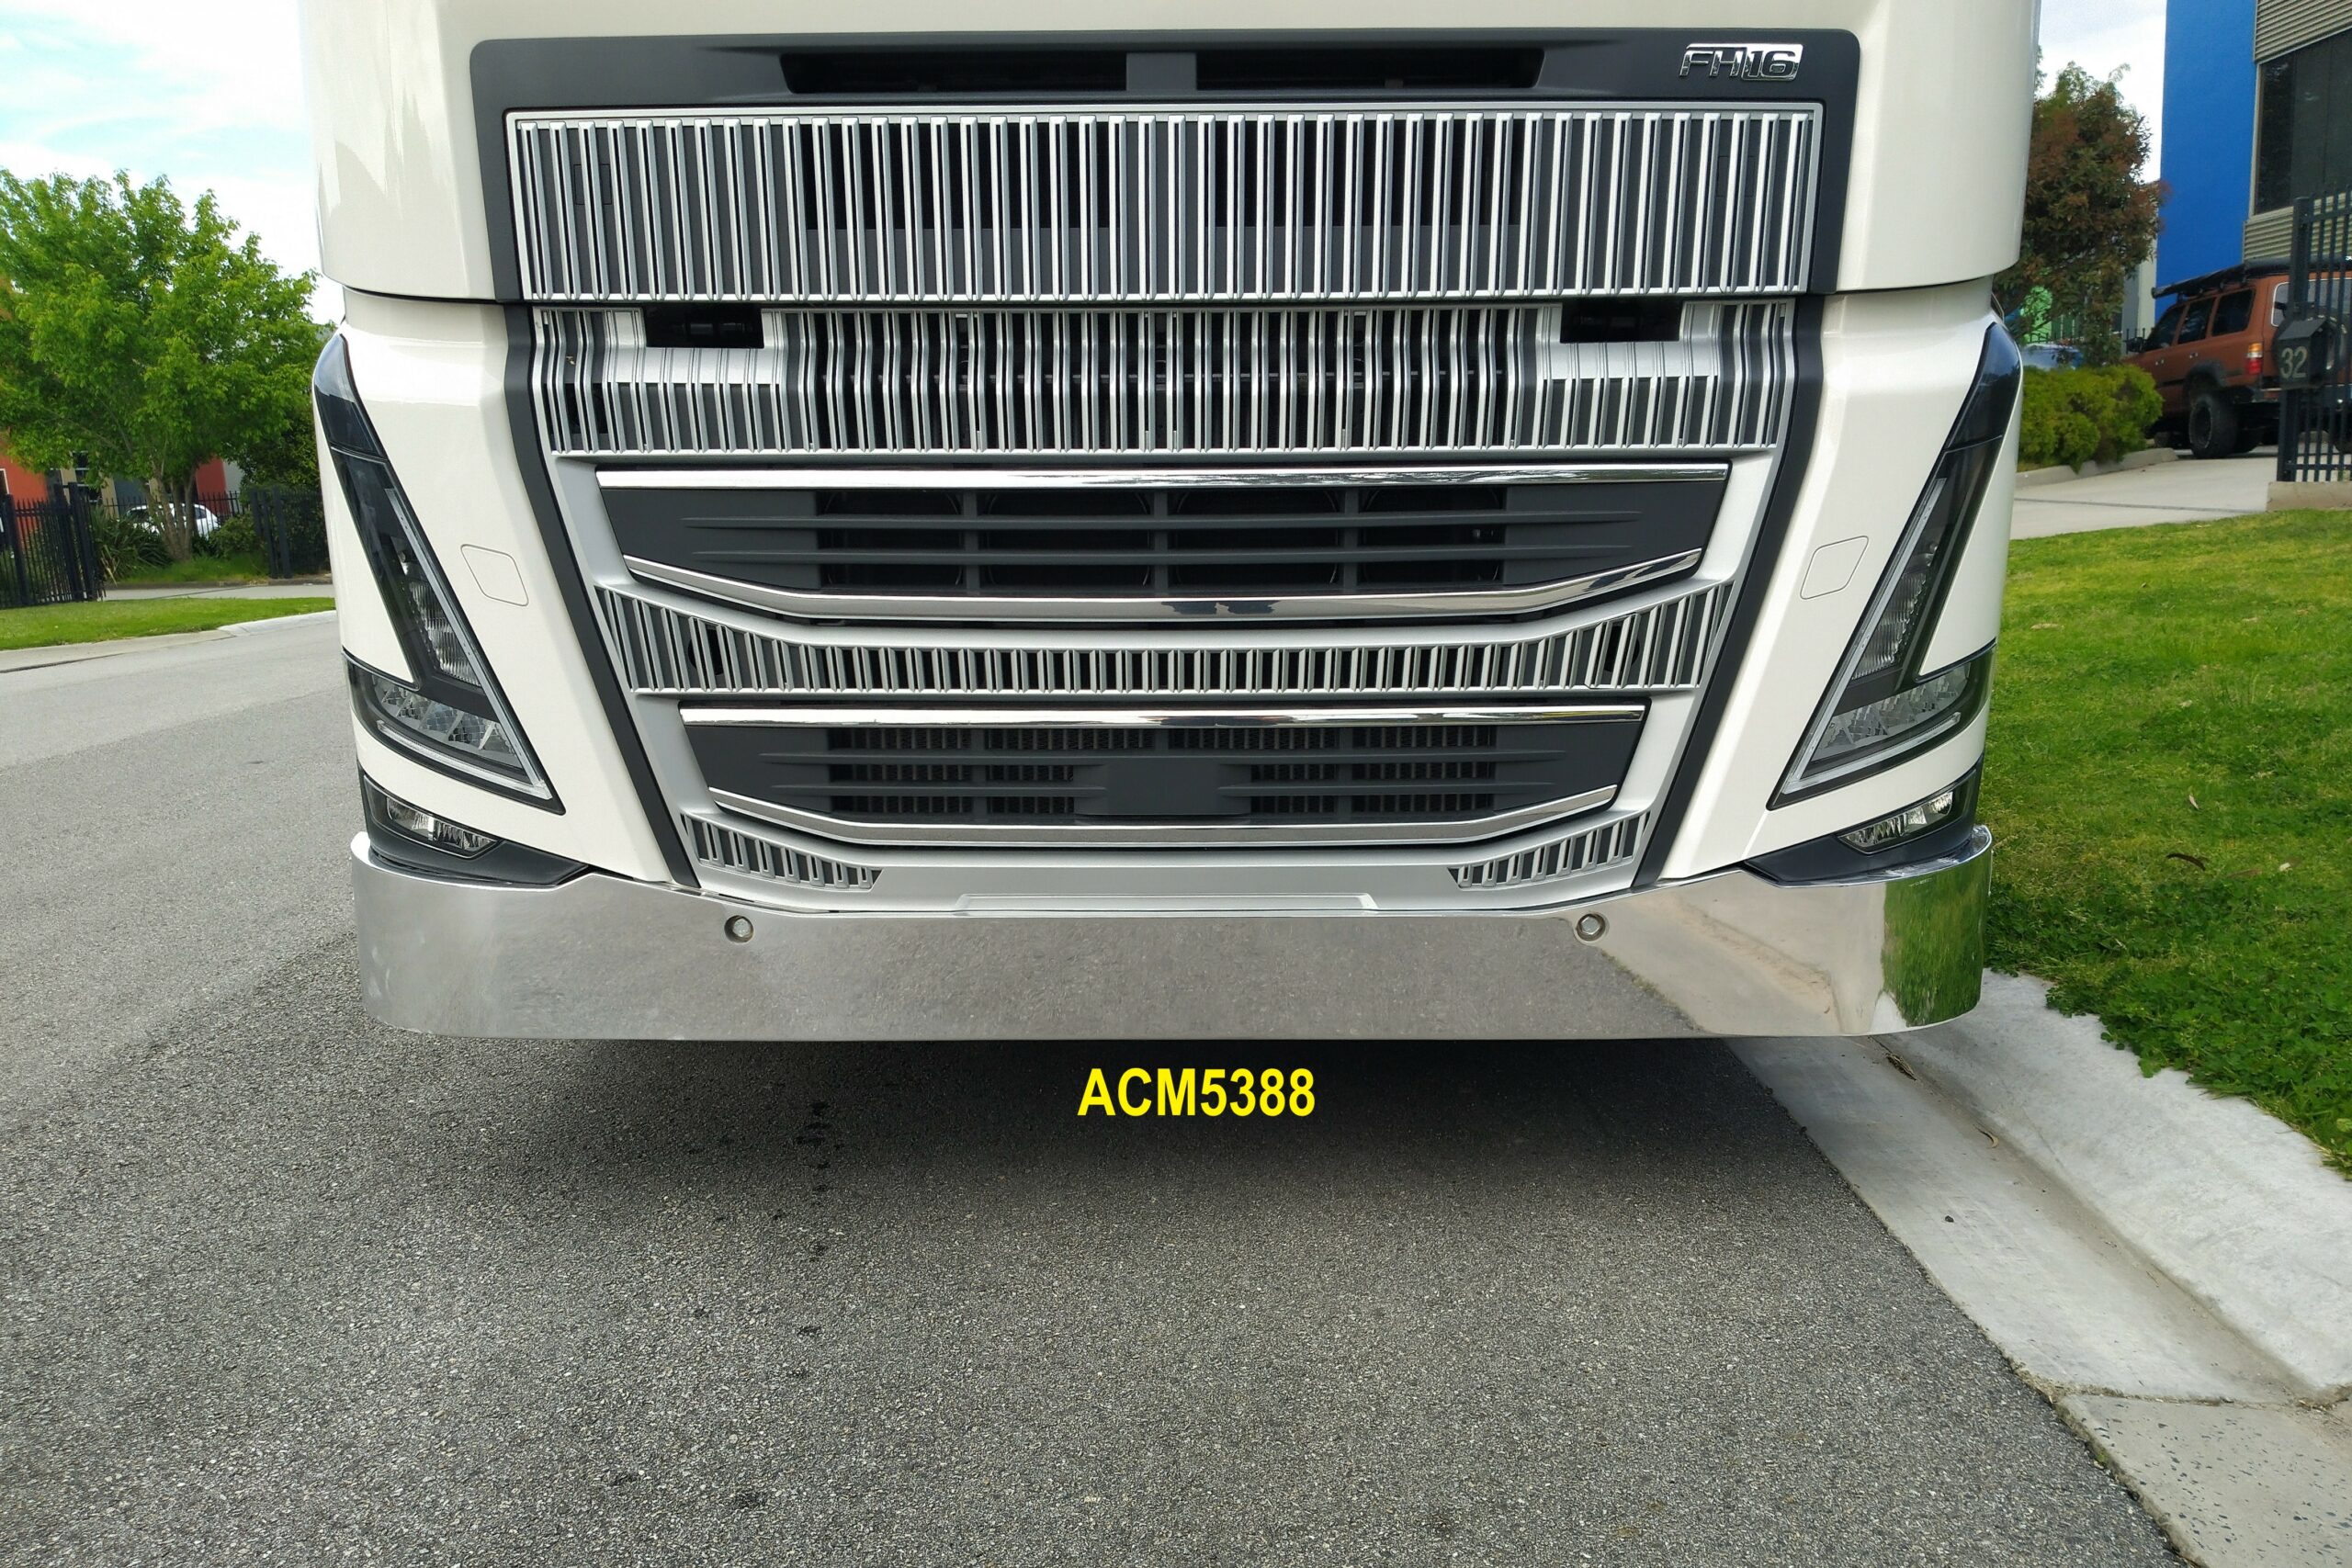 Acm5388 Volvo Fh Fm V5 21+ Bumper 03 Web